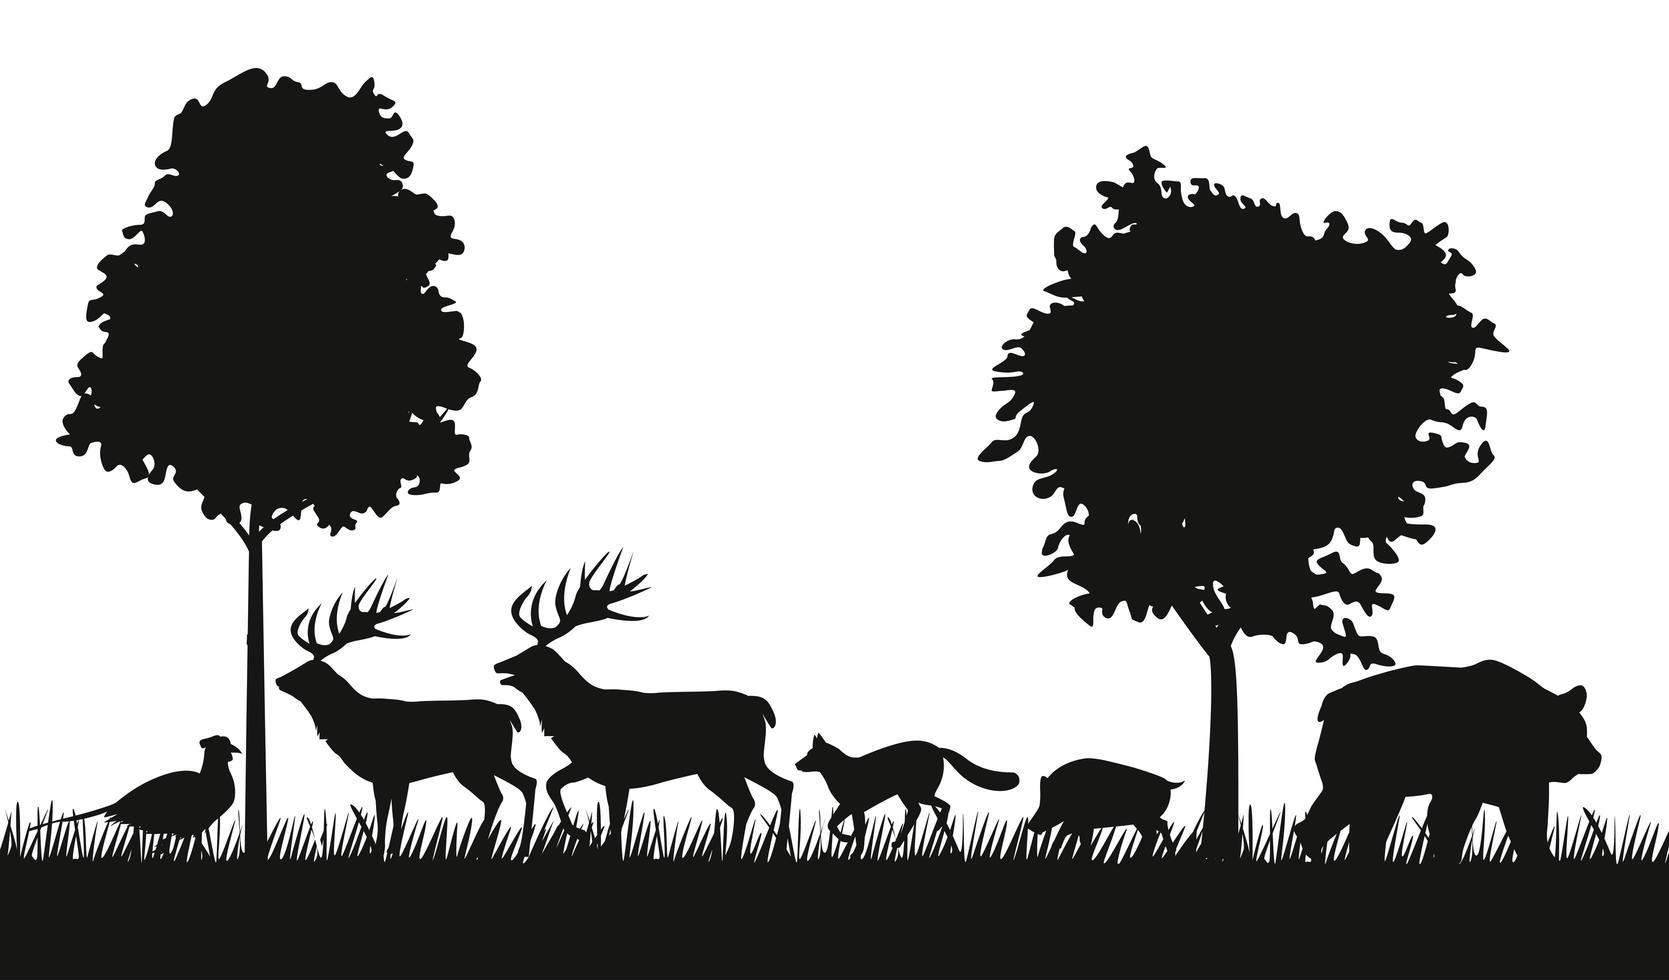 groupe d'animaux figure des silhouettes dans la scène de la jungle vecteur